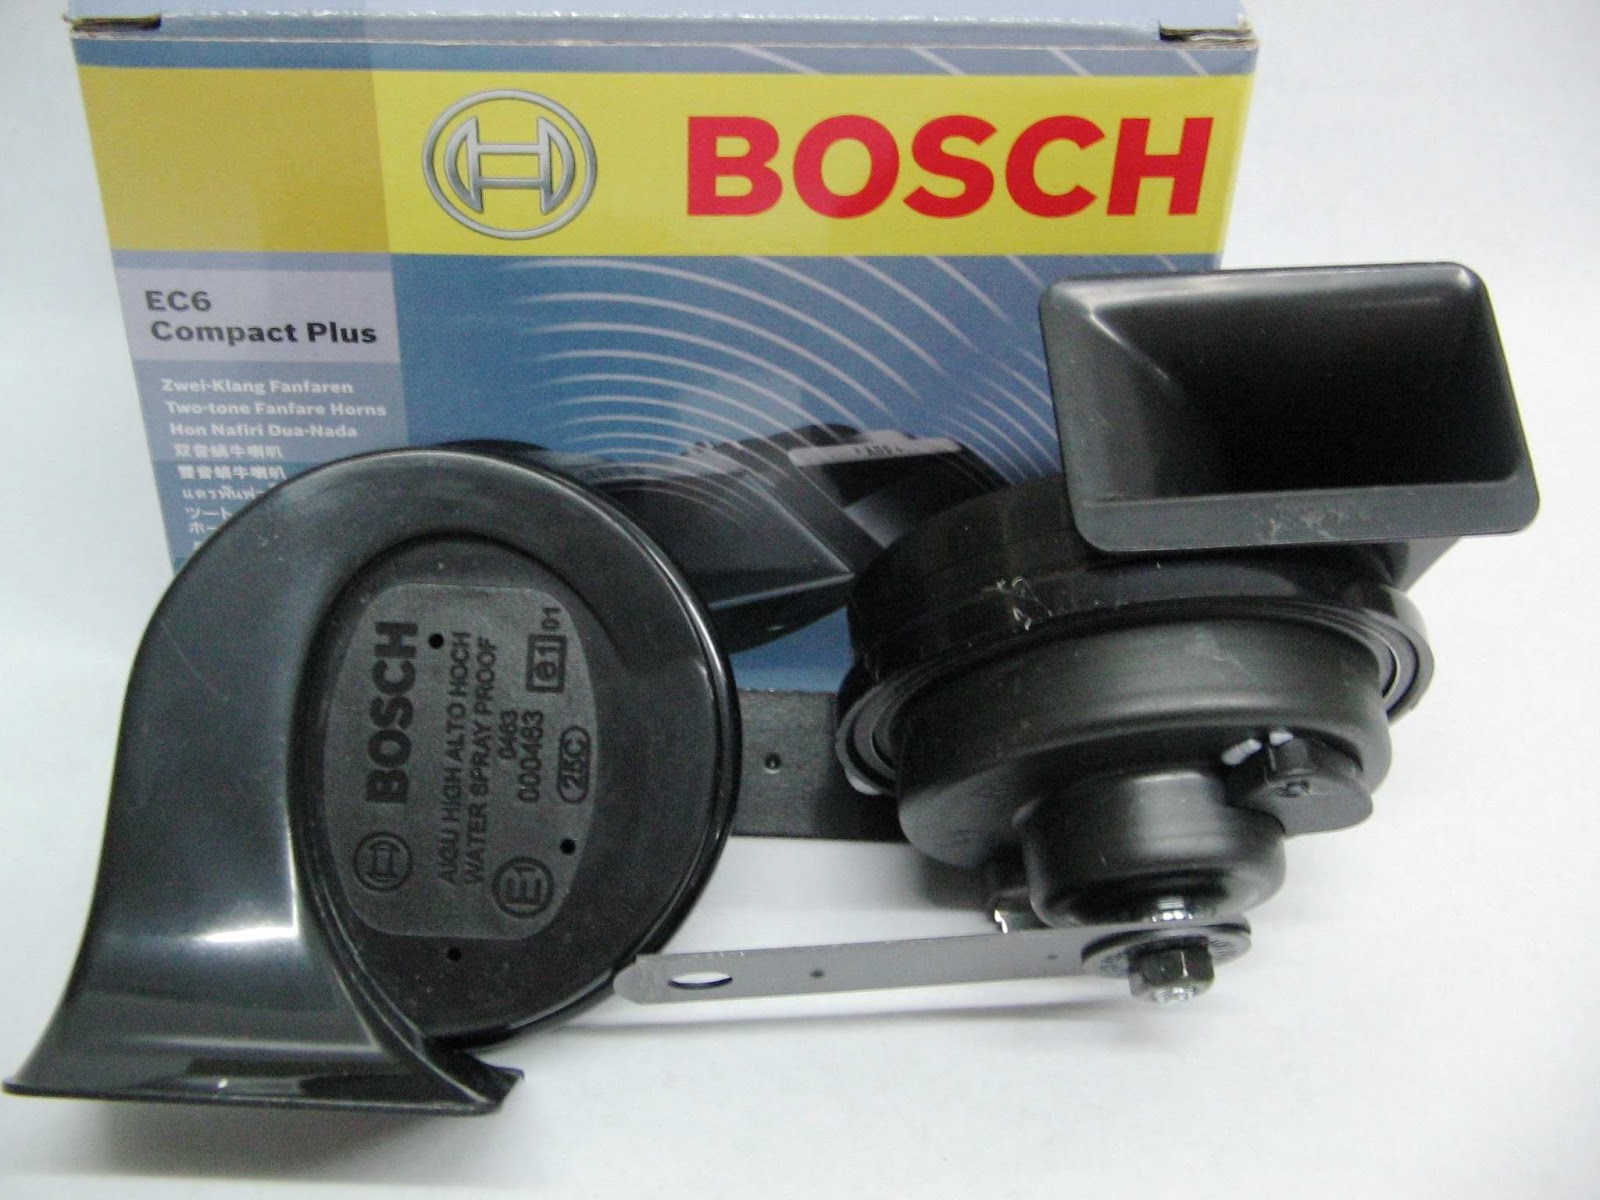 Bosch EC6 Compact Plus Fanfare Car Horn